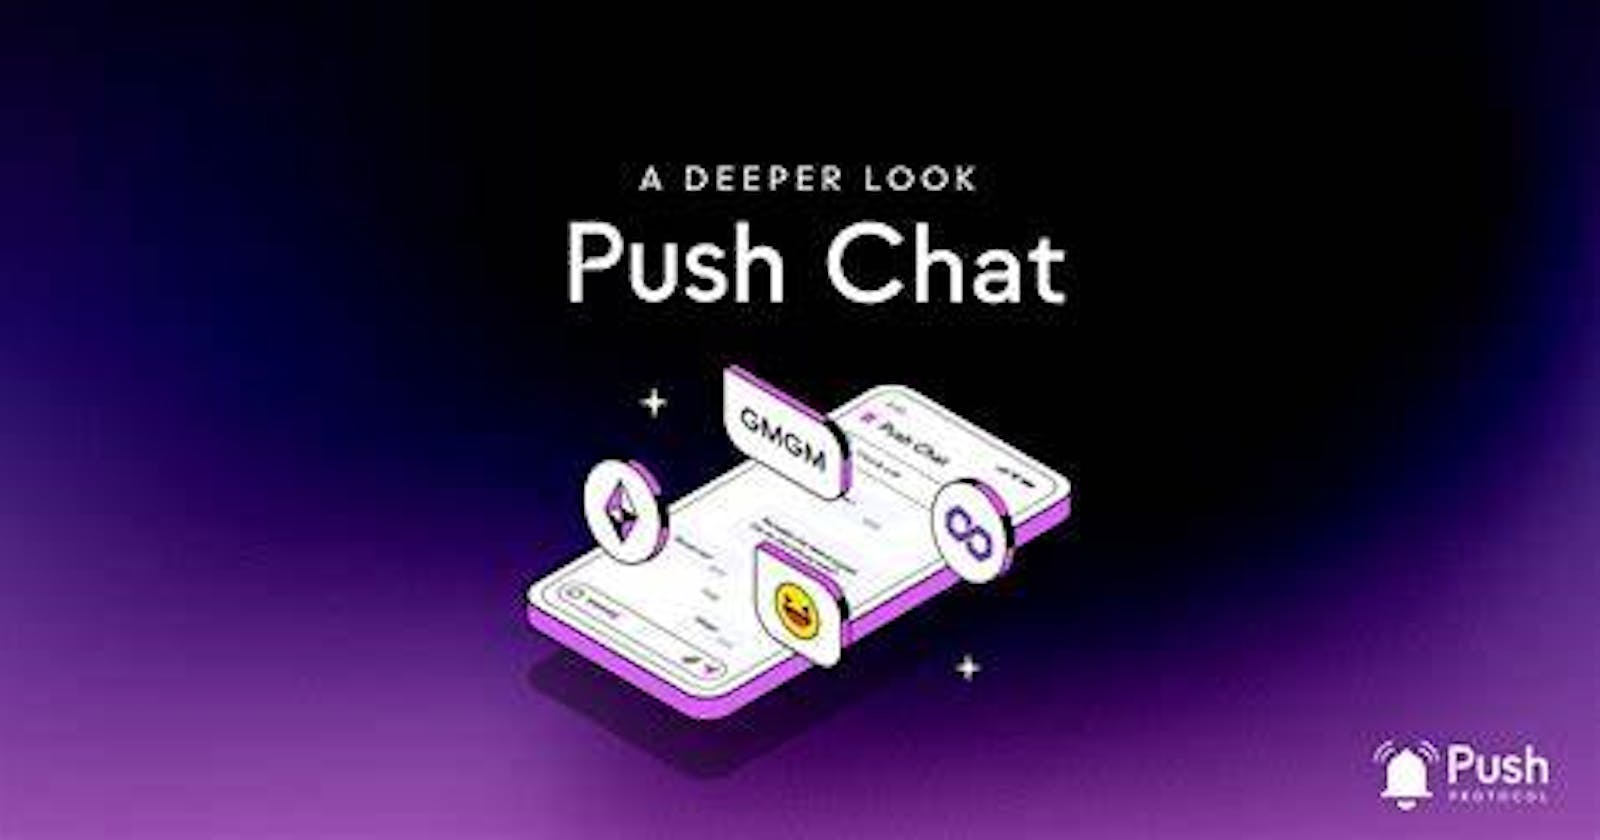 Push Chat